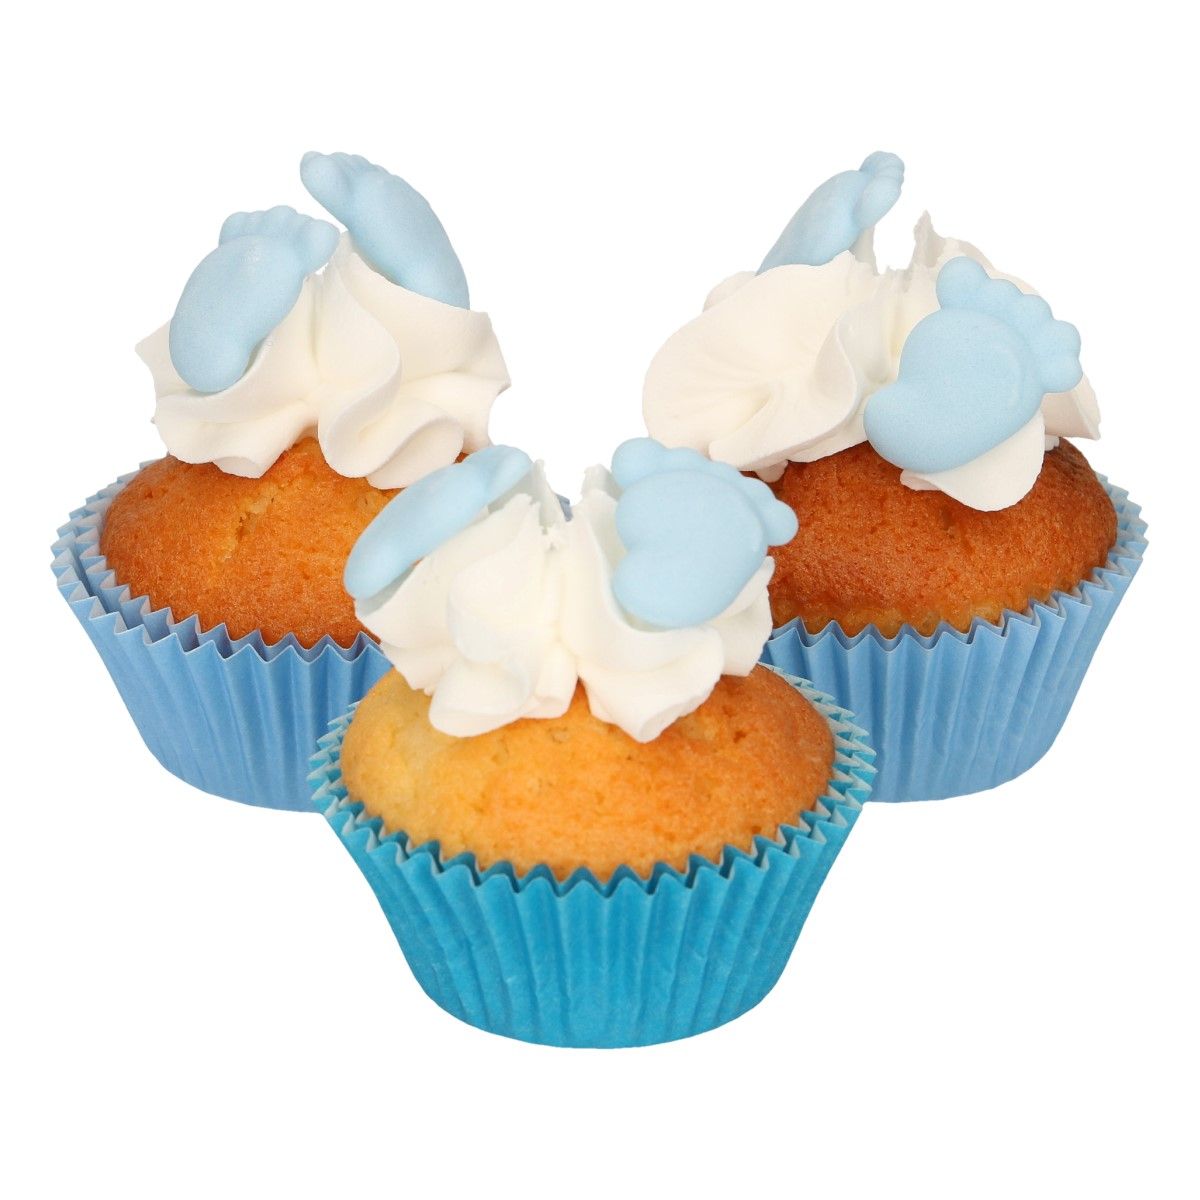 Ätbara dekorationer i form av blåa bebisfötter på cupcakes